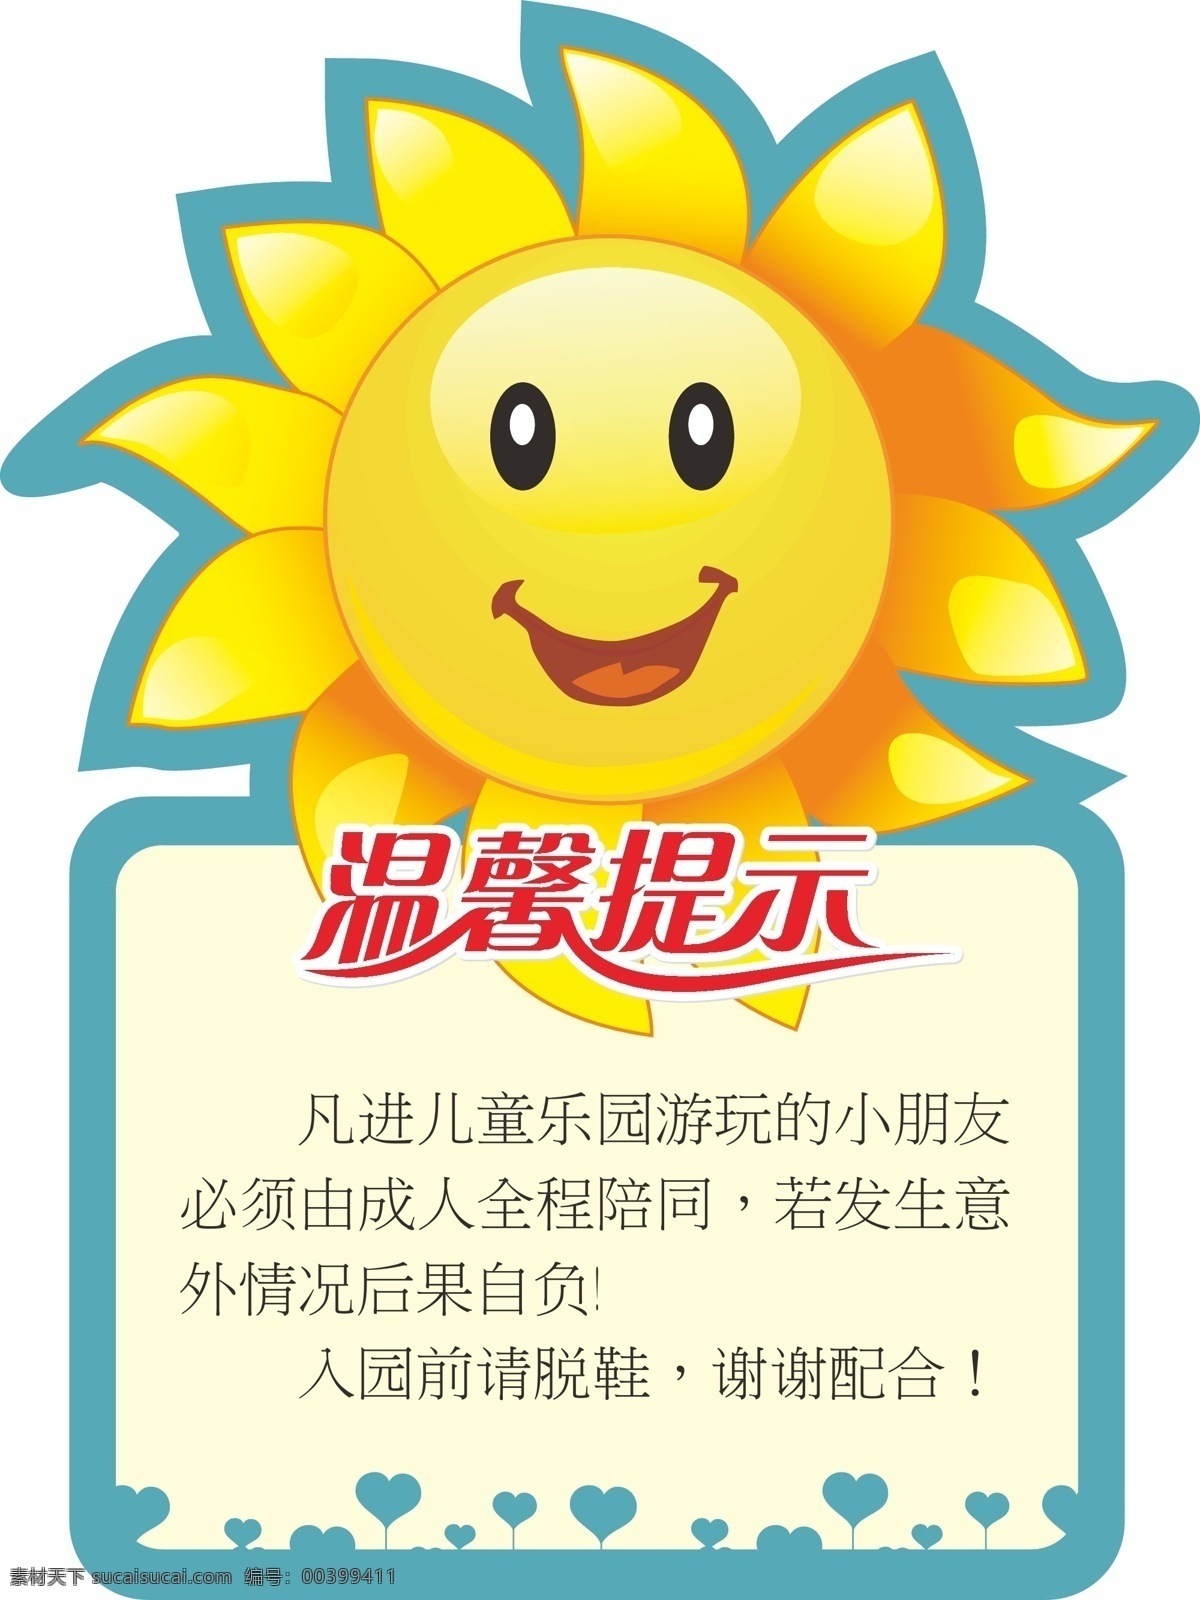 草坪牌 温馨提示 儿童游乐园 友情提醒 广告牌 异形牌 向日葵 向日葵卡通 雕刻 共享